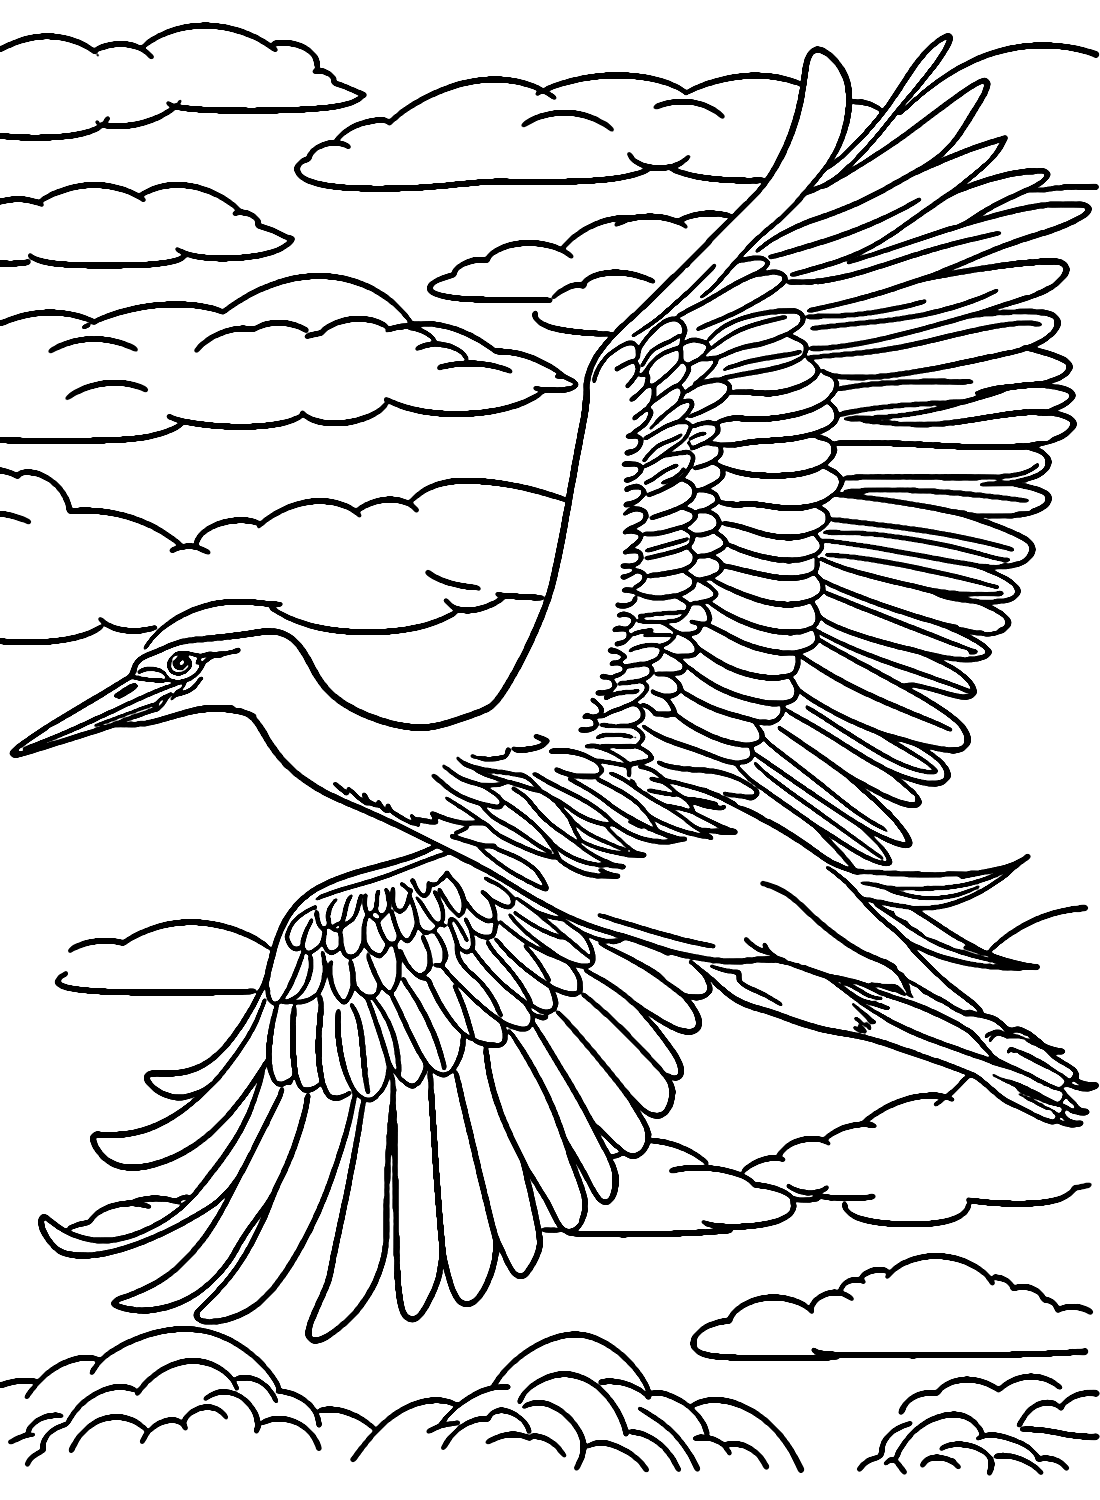 Heron breitet Flügel am Himmel aus von Heron